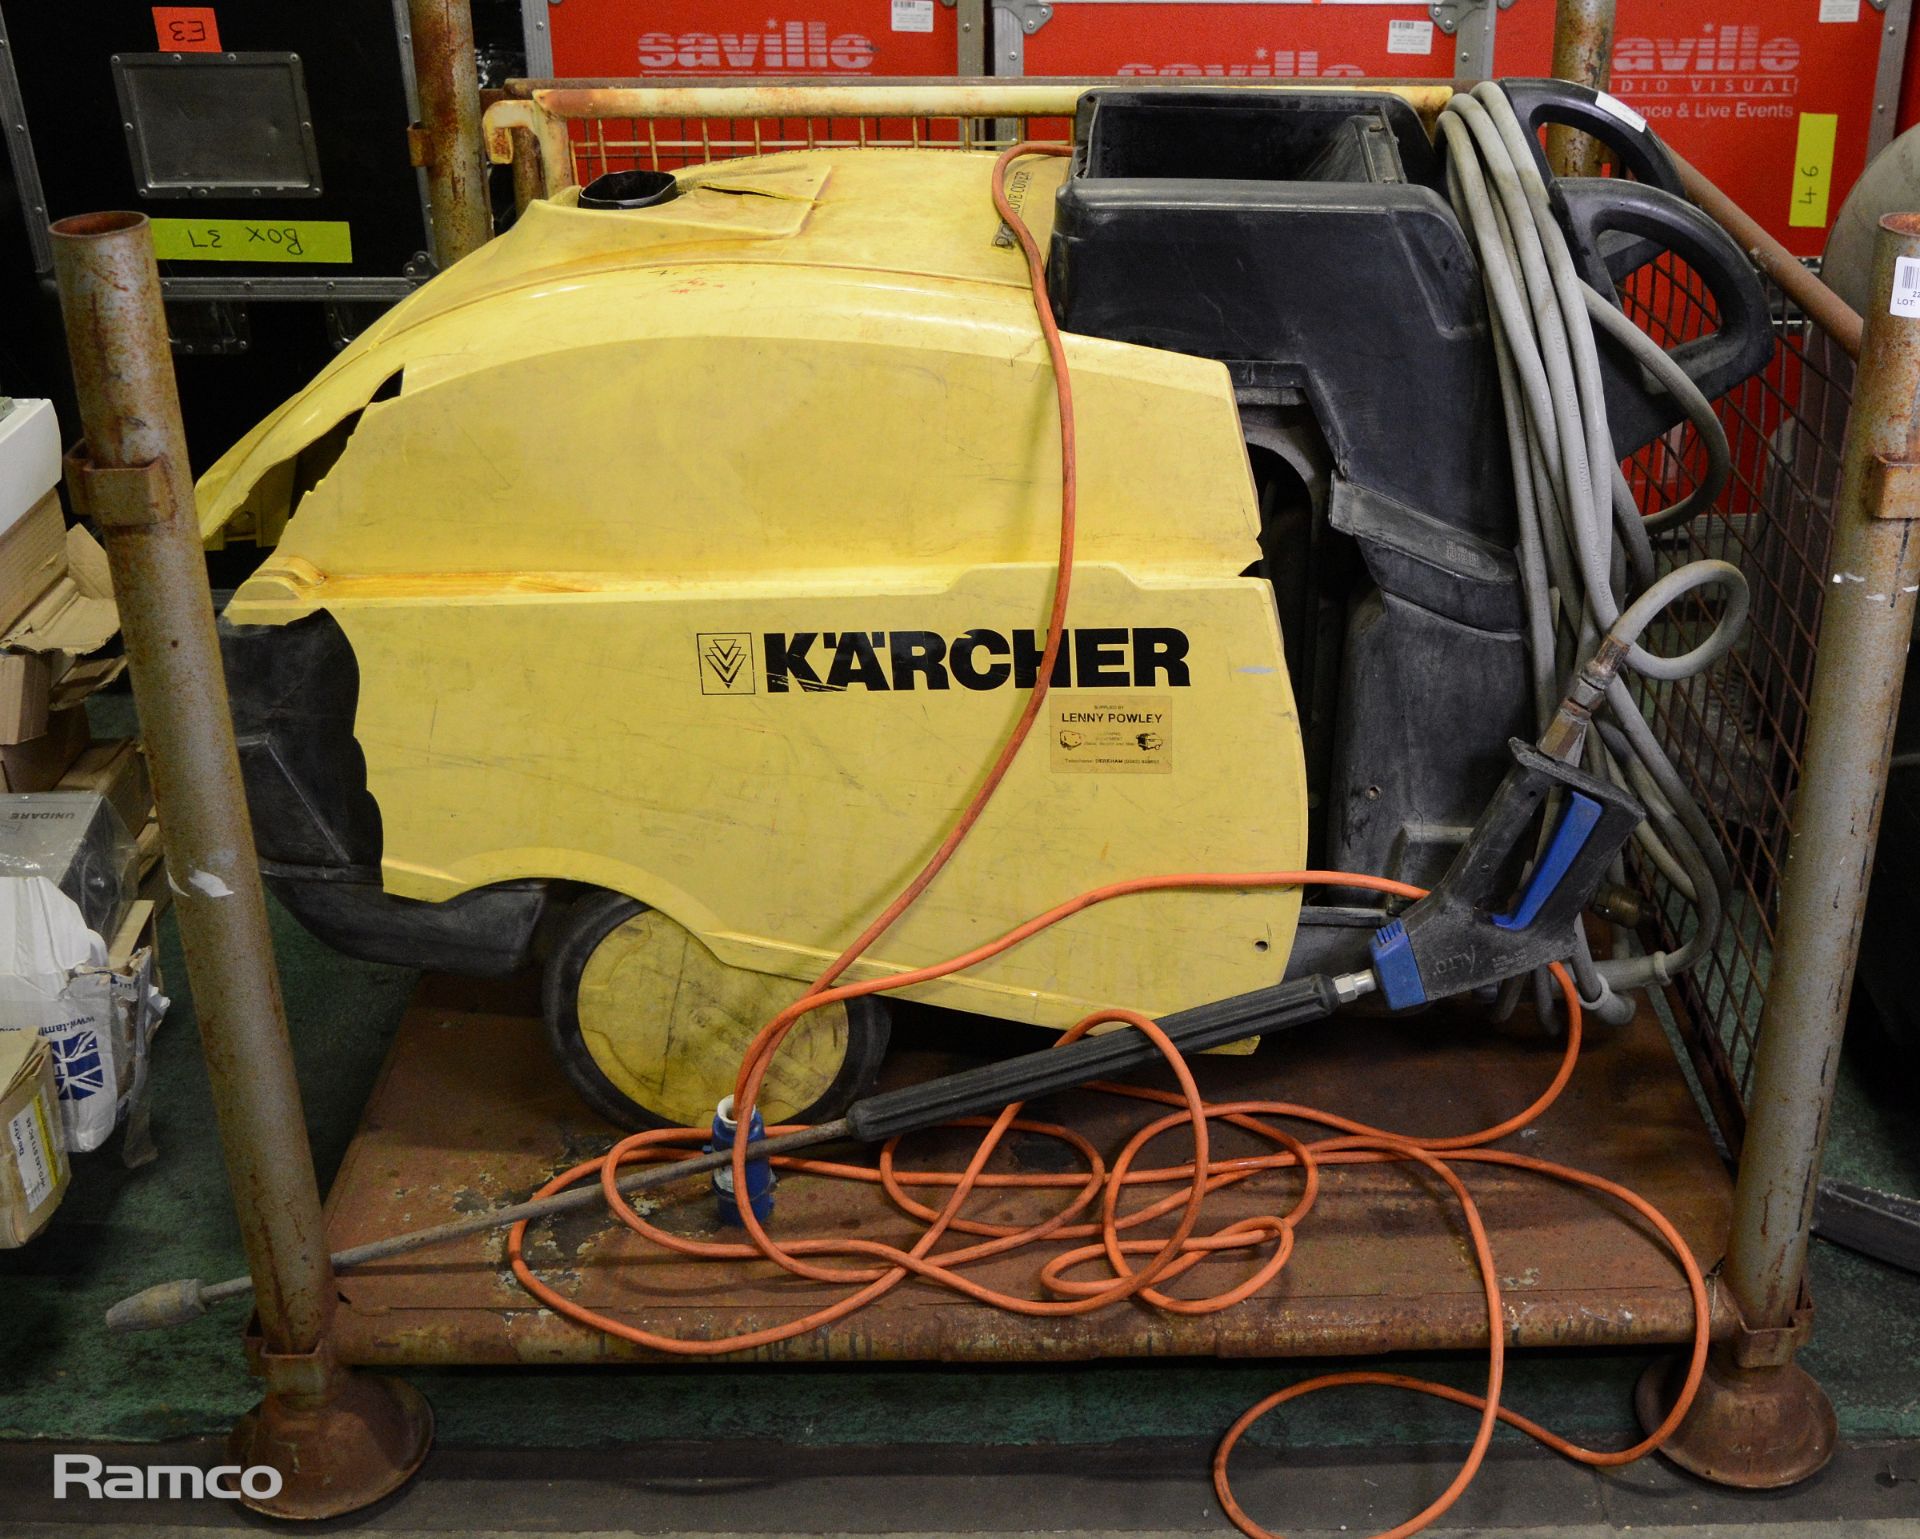 Karcher HDS 745 hot & cold 240v pressure washer/steam cleaner - some slight damage to top